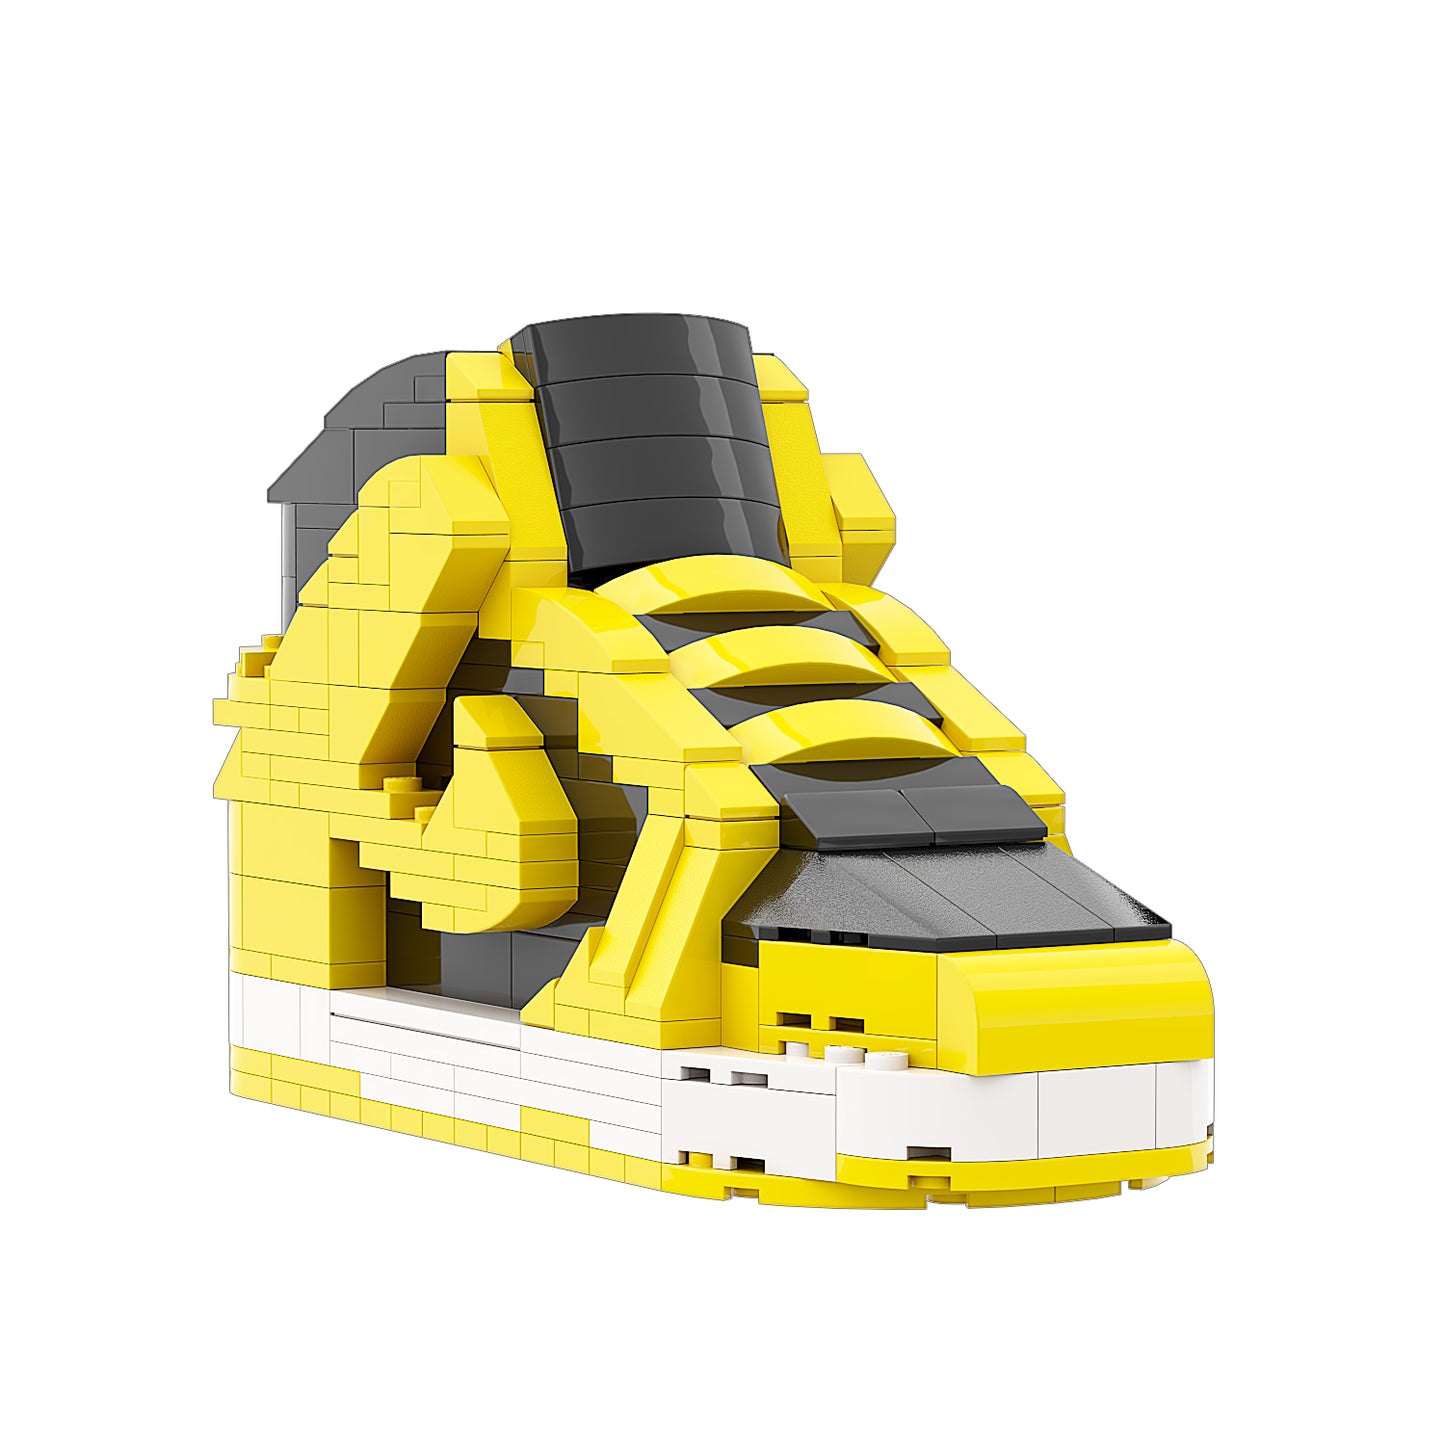 REGULAR  "Dunk High Wutang" Sneaker Bricks with Mini Figure